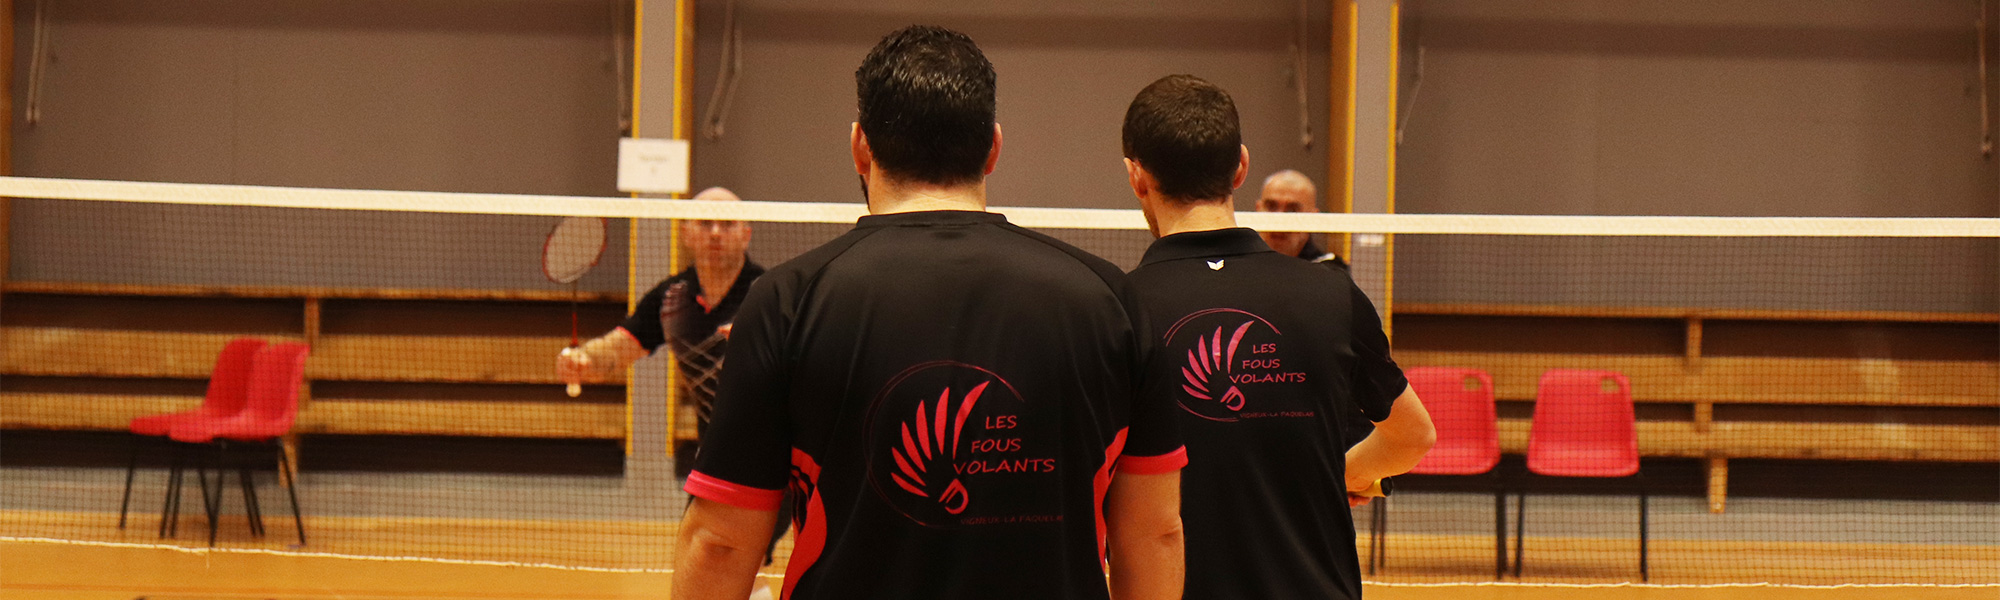 Badminton tournois Loire Atlantique